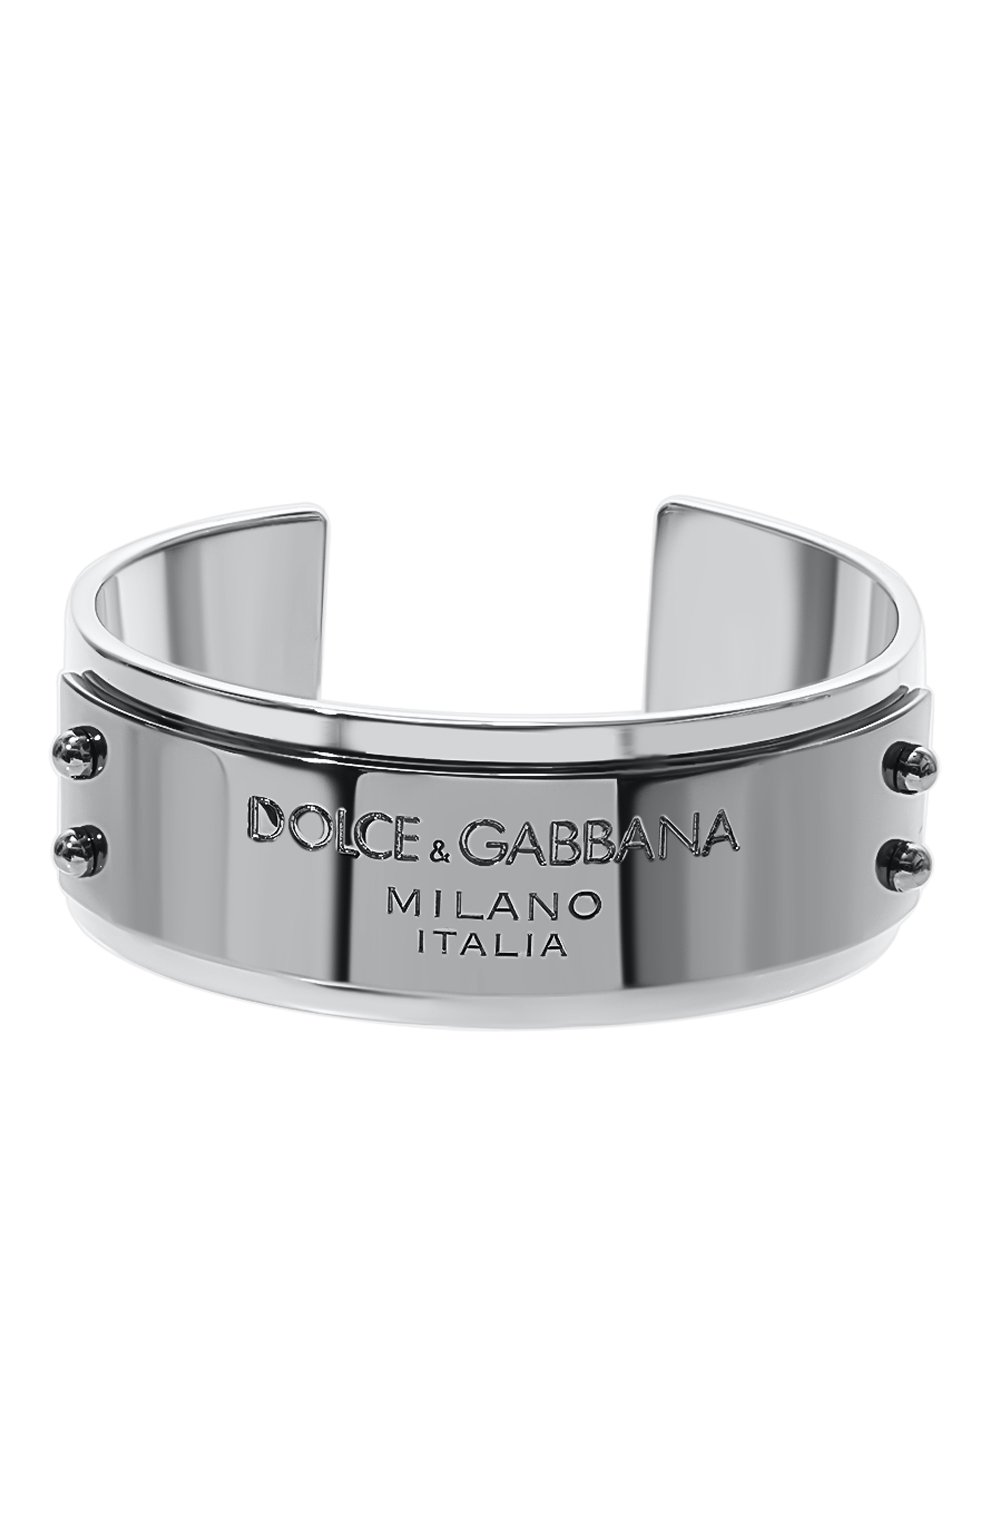 Купить браслет Dolce & Gabbana (Дольче Габбана) в интернет-магазине | voenipotekadom.ru